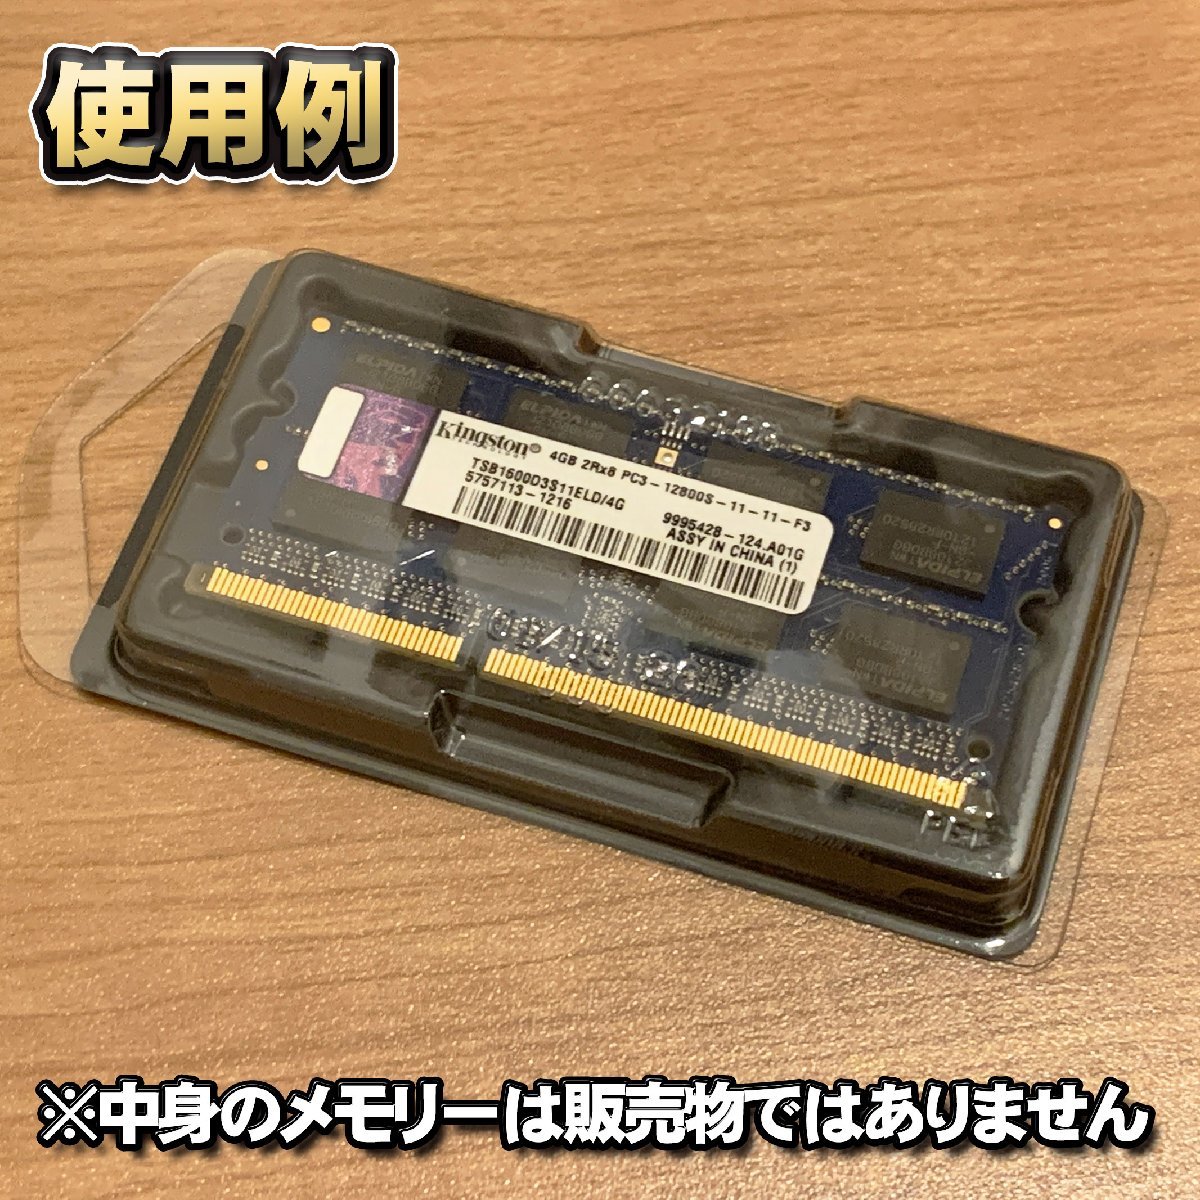 「Type-A」【 DDR 対応 】蓋付き ノートPC メモリー シェルケース S.O.DIMM 用 プラスチック 保管 収納ケース 20枚セット_画像7